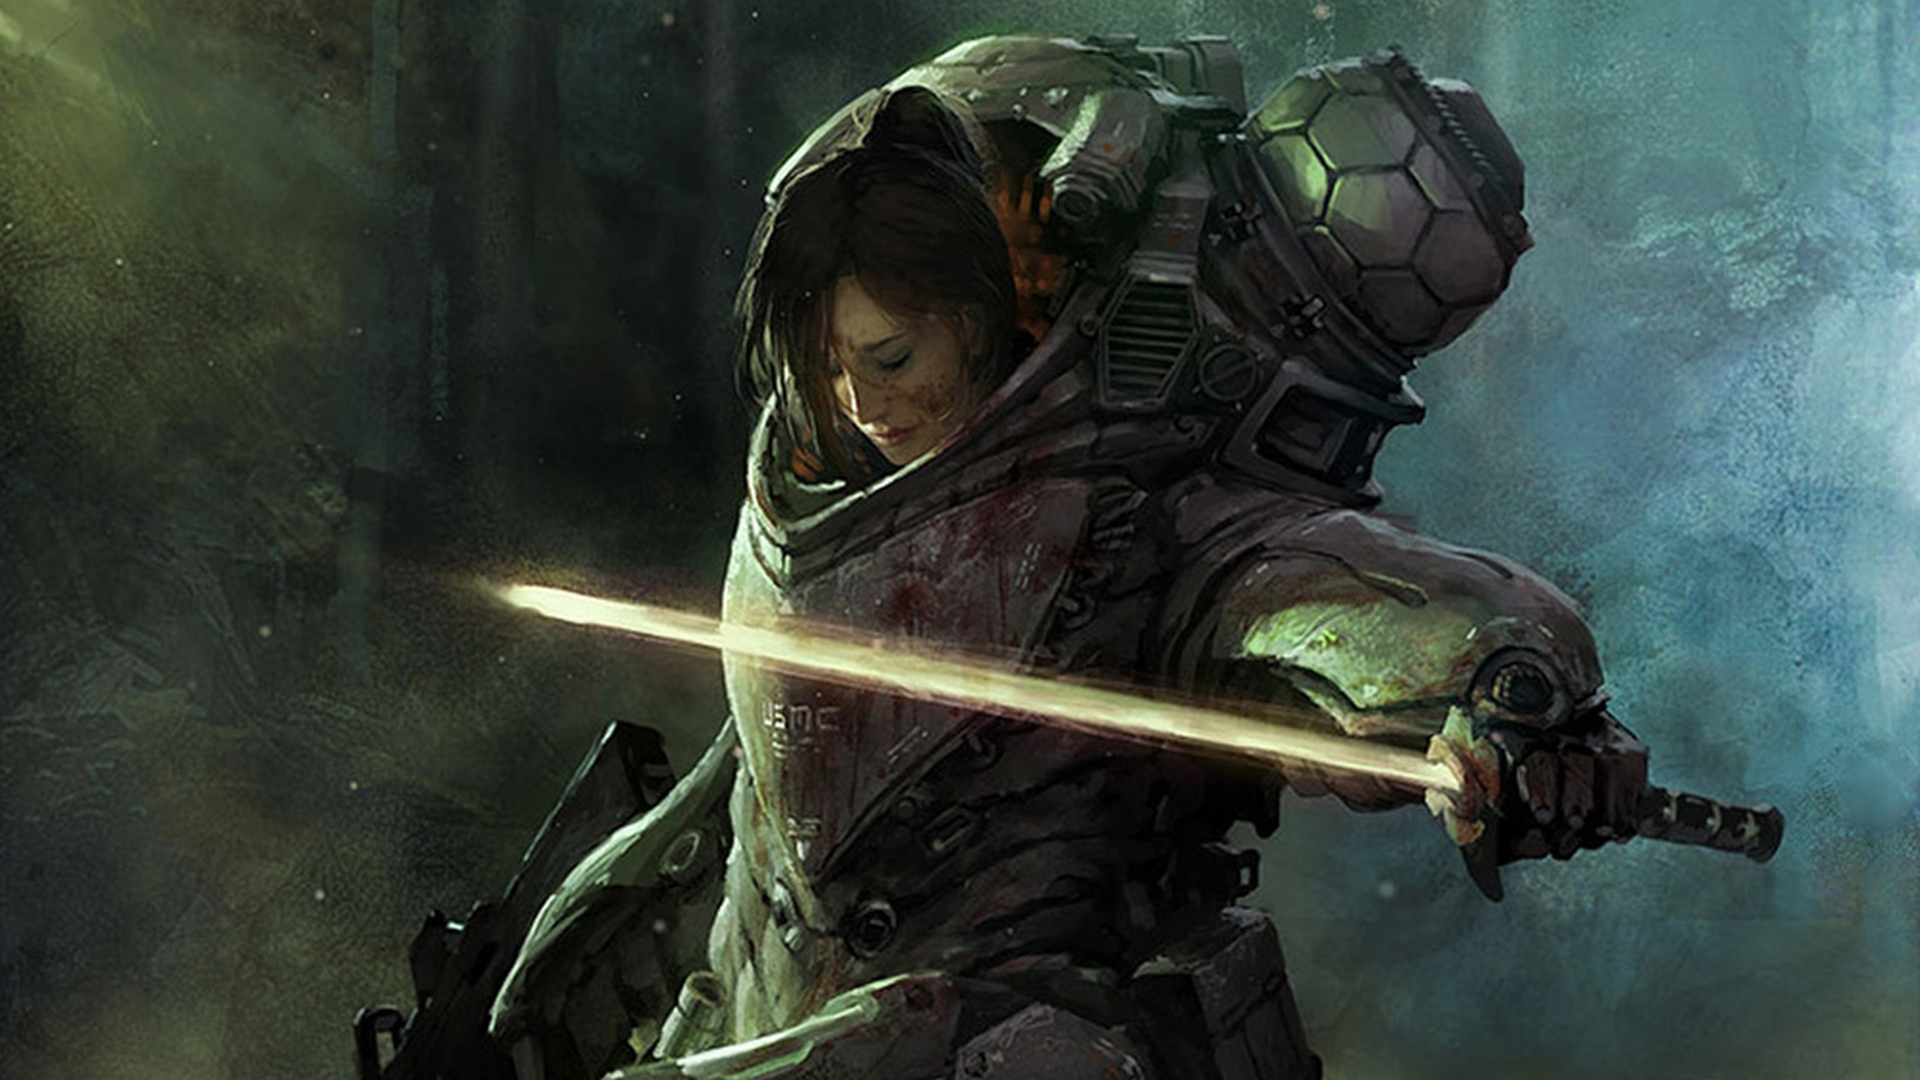 Sci-fi women warrior in armor wielding a sword - a stunning desktop wallpaper by Marek Okon.